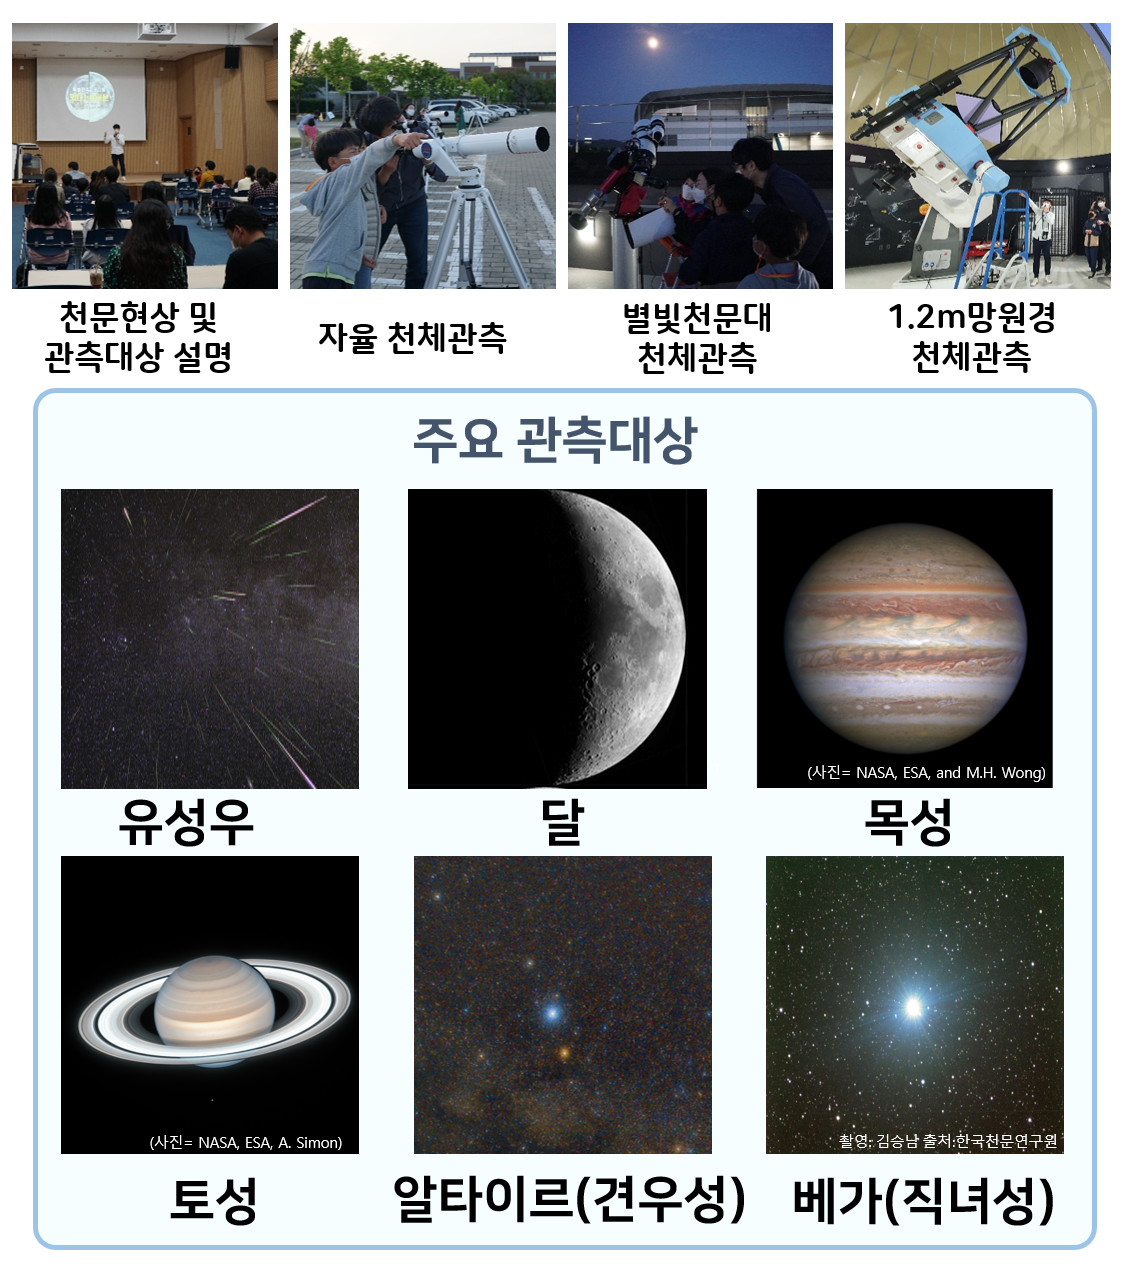 천문현상 및 관측대상 설명, 자율 천체관측, 별빛천문대 천체관측, 1.2m 망원경 천체관측 | 주요관측대상 : 유성우, 달, 목성, 토성, 알타이르(견우성), 베가(직녀성)